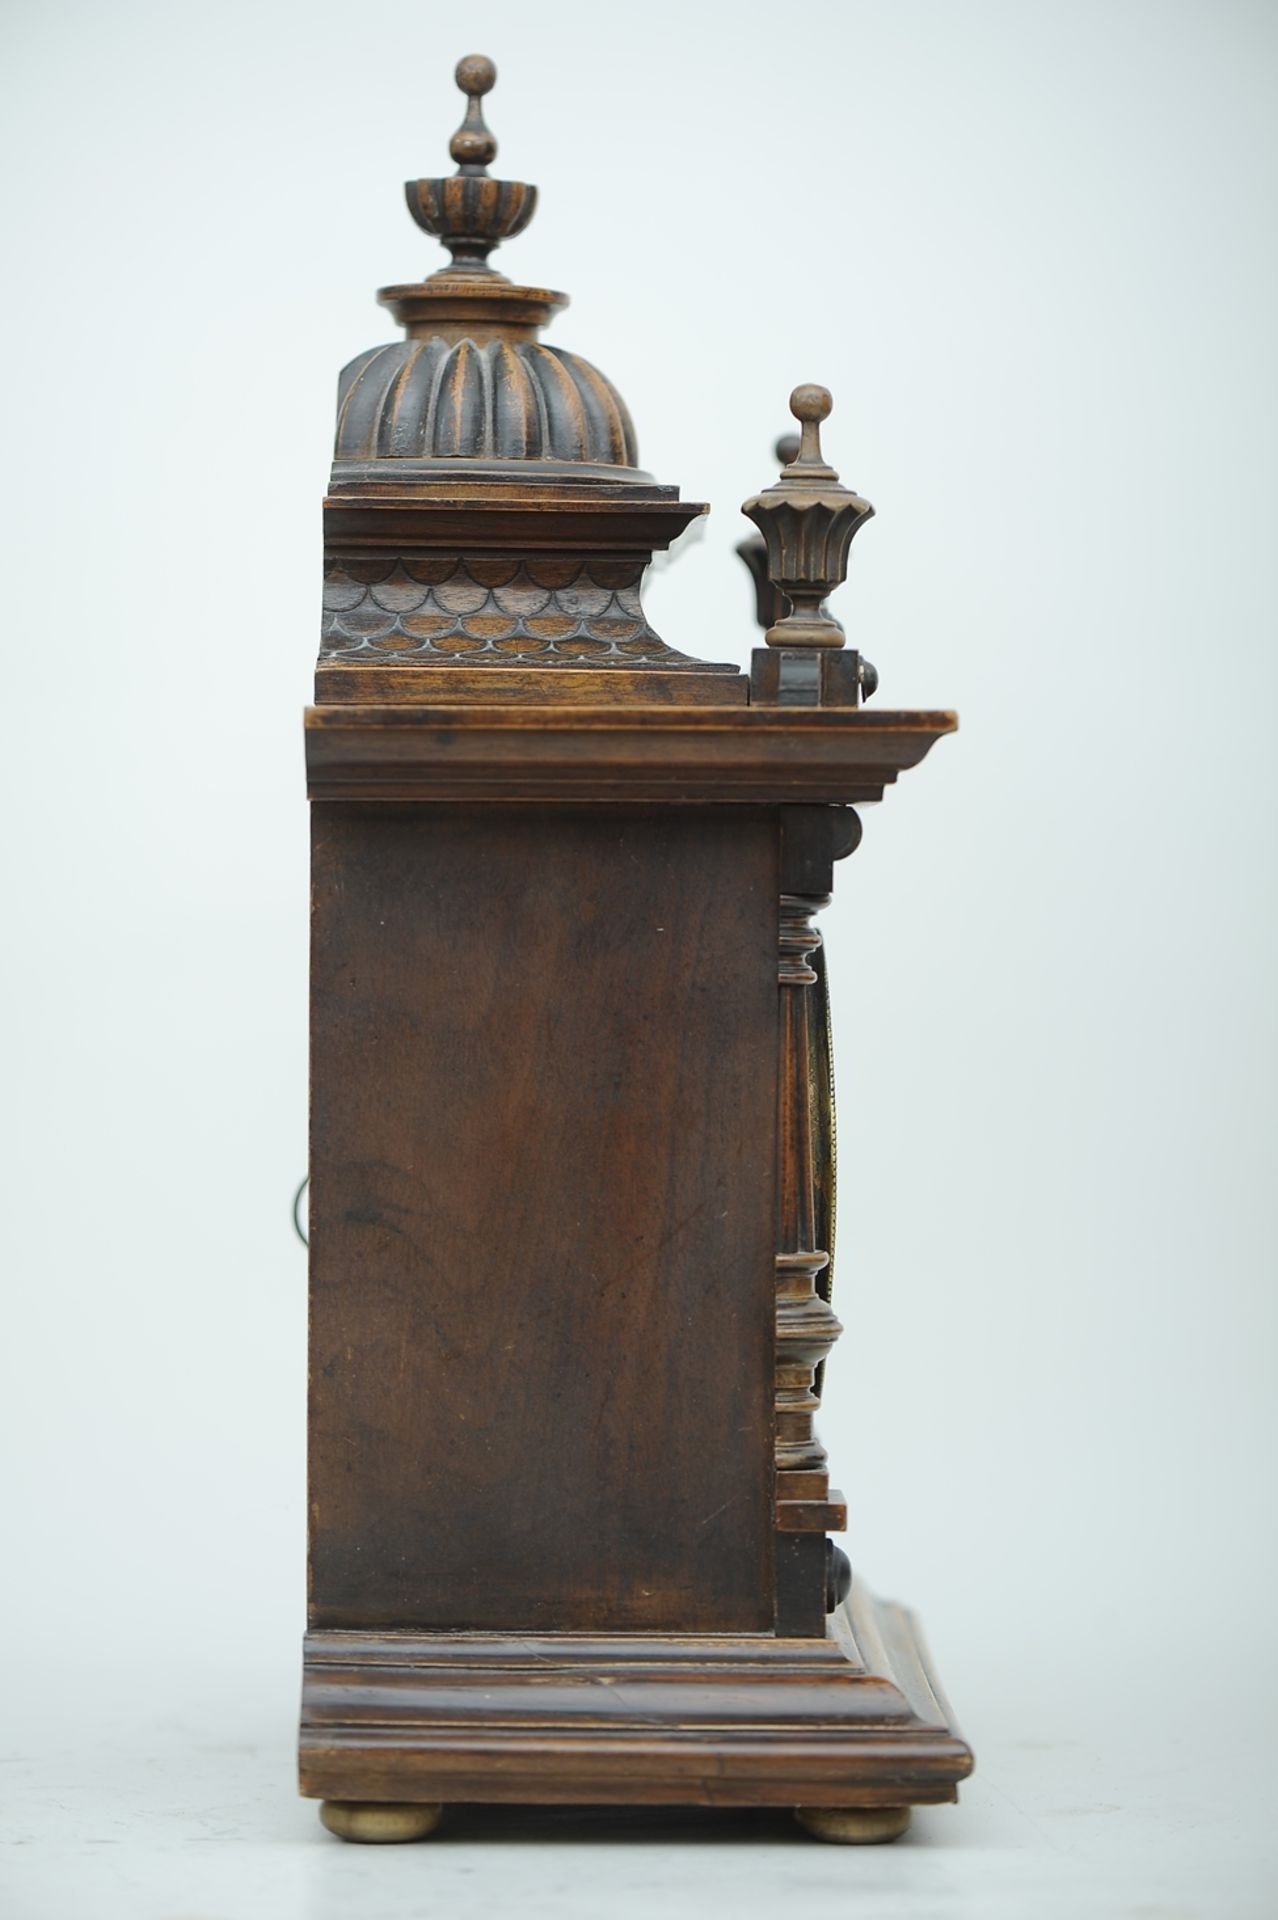 Kaminuhr, Historismus - "The Greenwich Clock" - aufwändig mit "Dachschindeln" und Türmchenabschlüss - Image 13 of 14